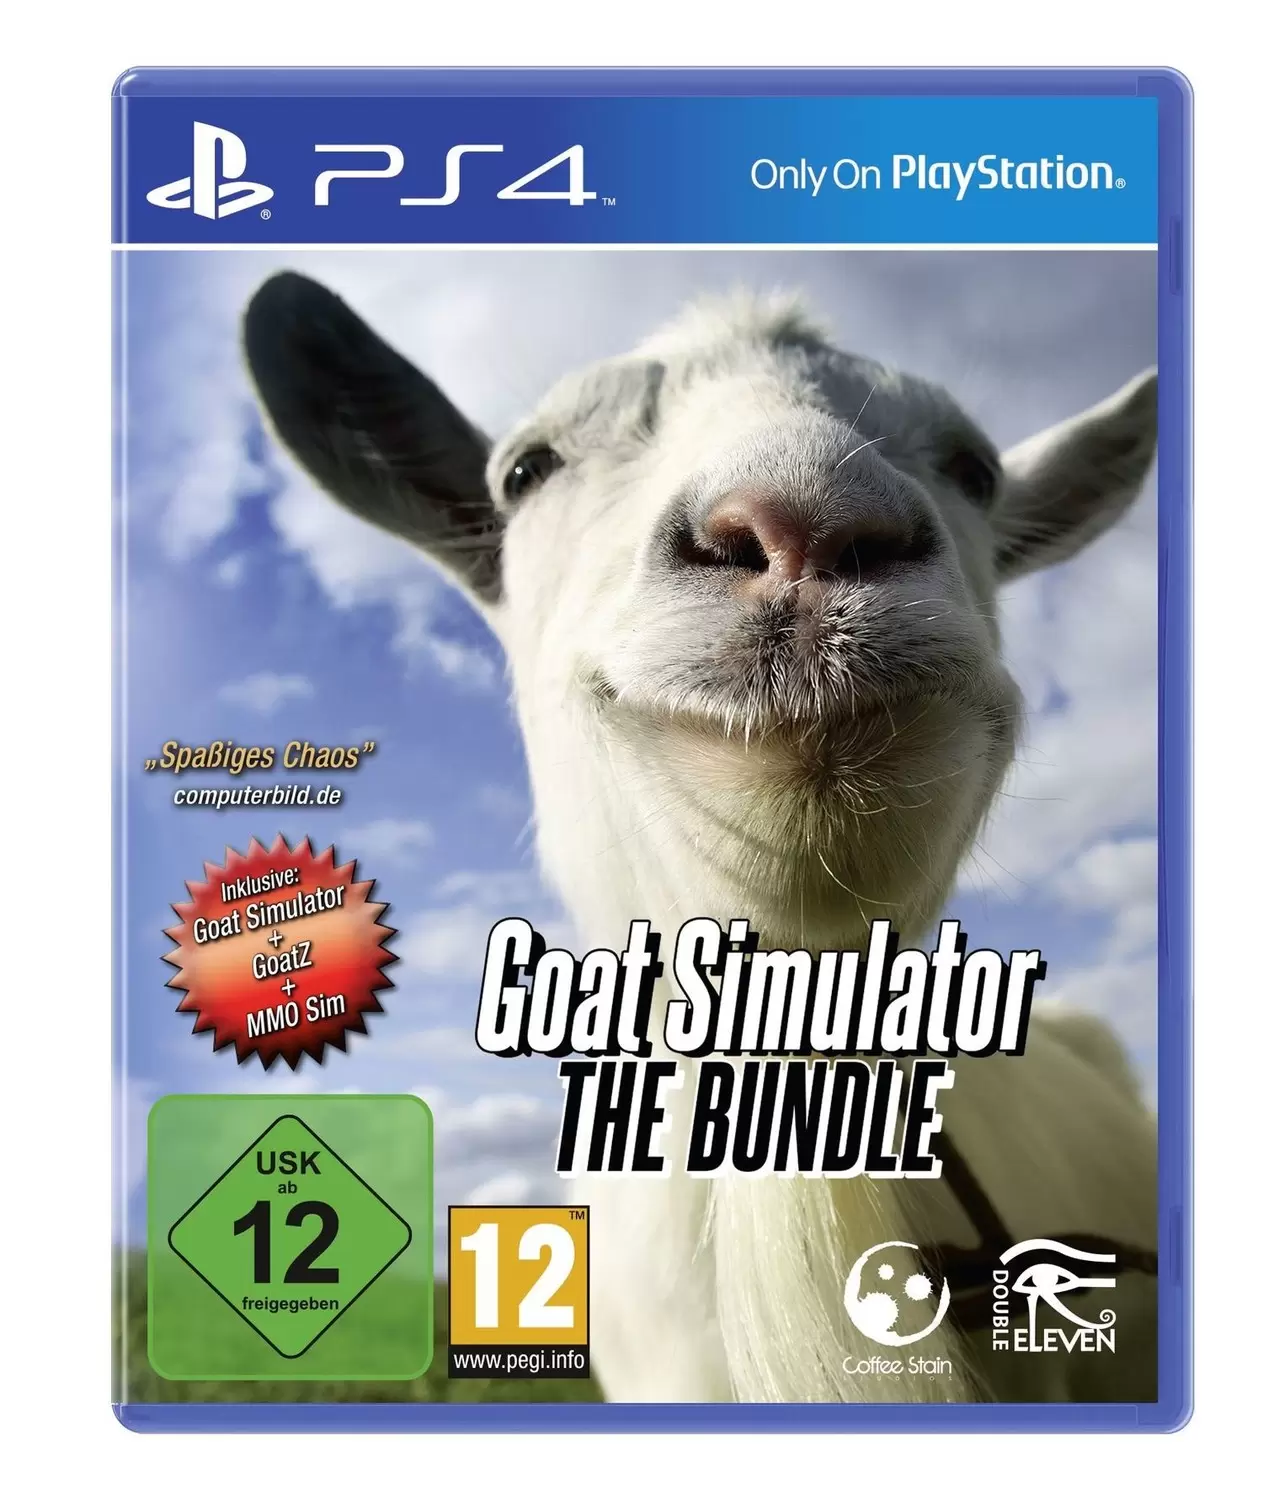 PS4 Games - Goat Simulator